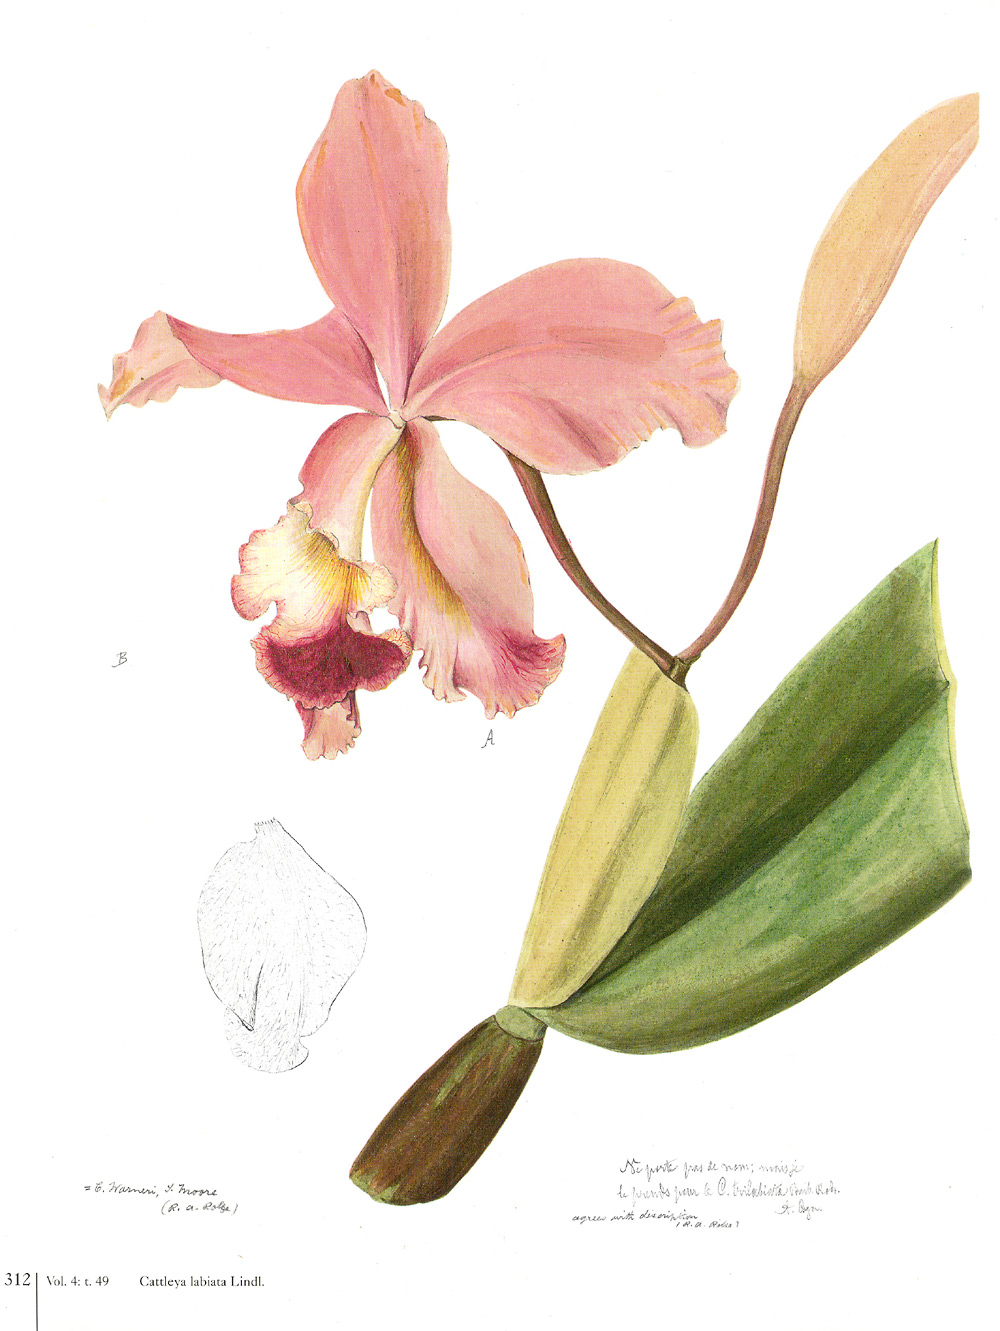   Гербарий из орхидей научат делать 23 ноября в "Аптекарском огороде" - фото 6